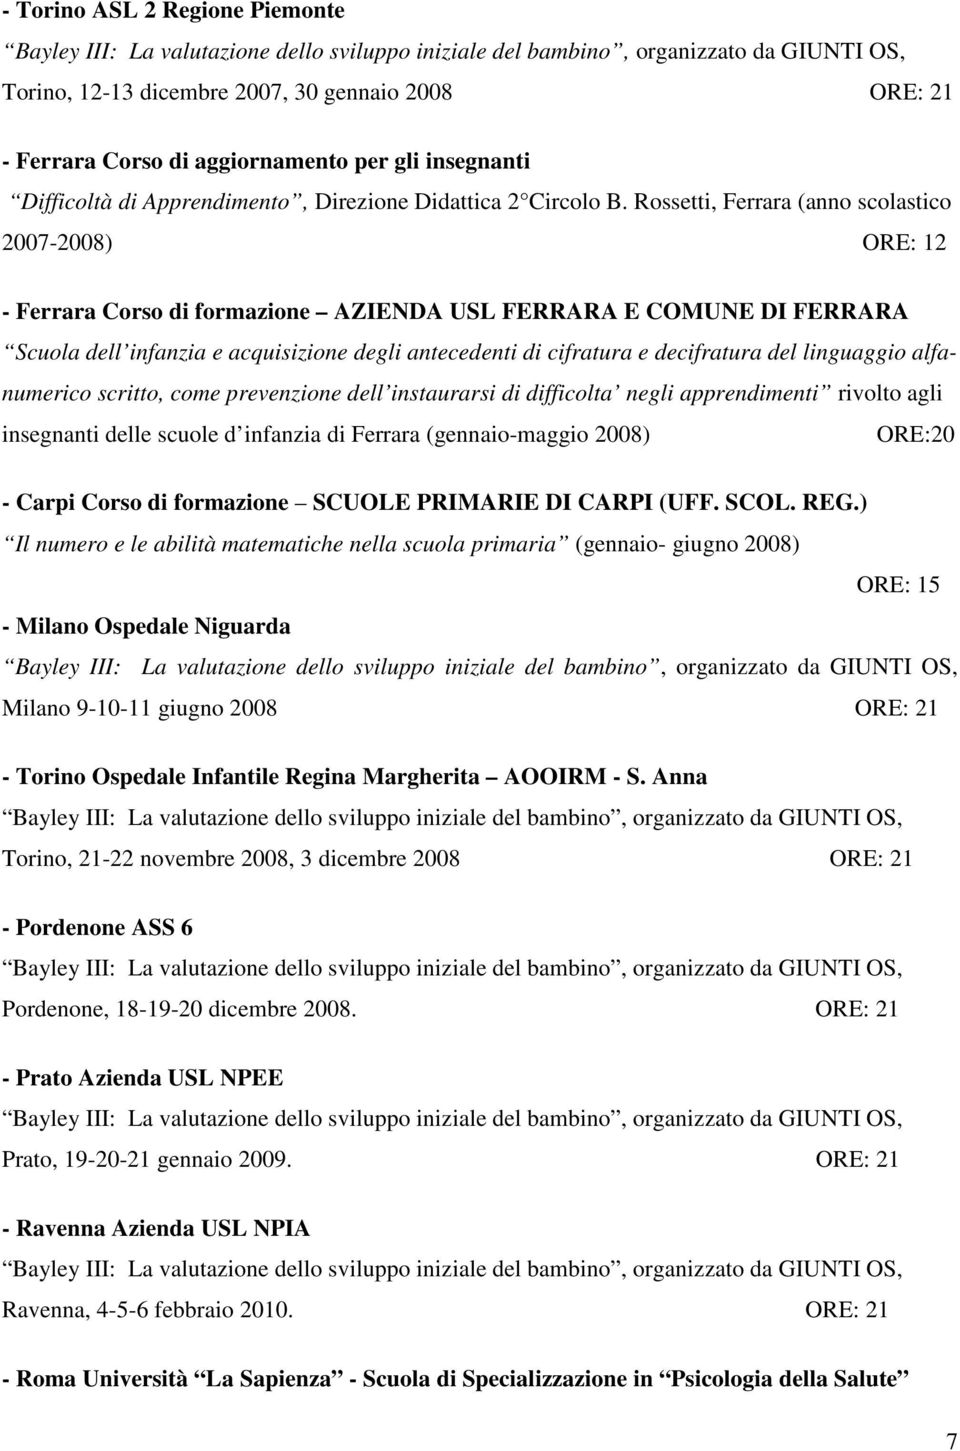 decifratura del linguaggio alfanumerico scritto, come prevenzione dell instaurarsi di difficolta negli apprendimenti rivolto agli insegnanti delle scuole d infanzia di Ferrara (gennaio-maggio 2008)